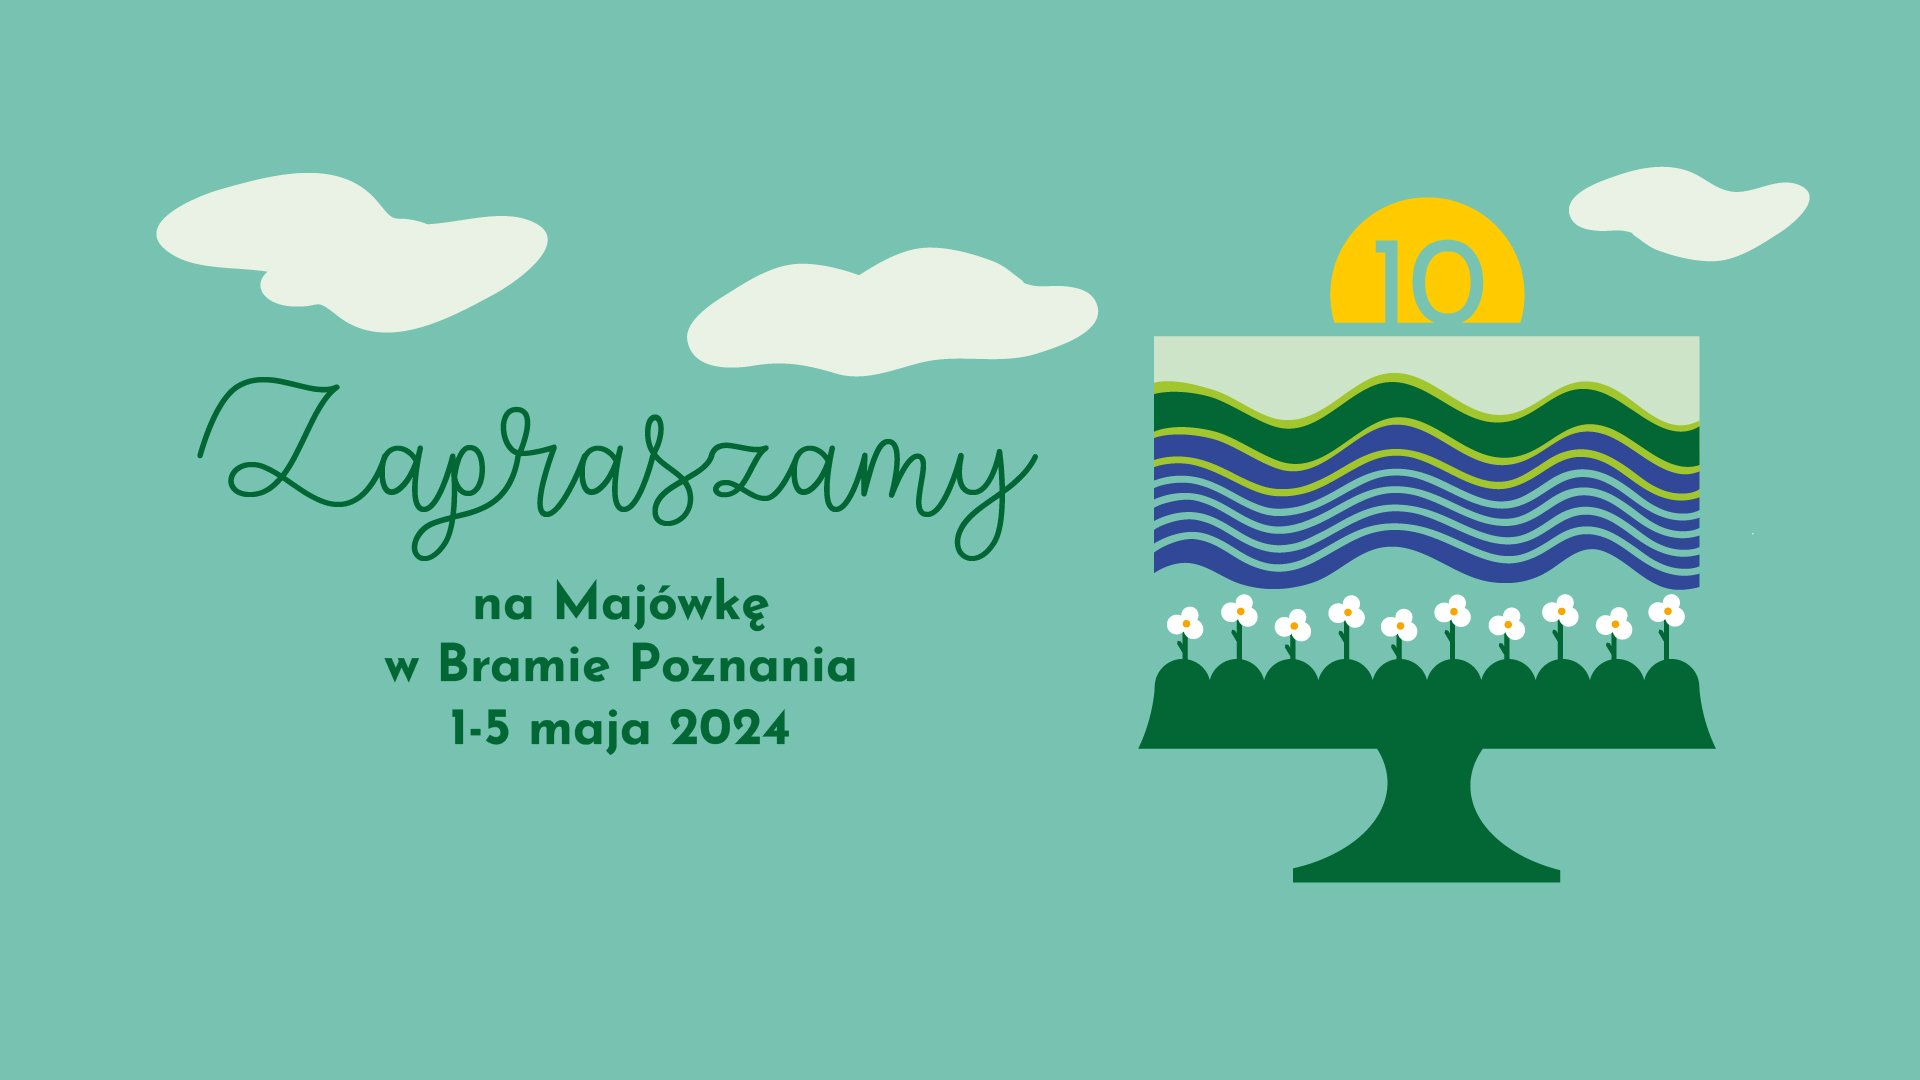 Zaproszenie na Majówkę i 10. urodziny Bramy Poznania, z datami 1-5 maja, na zielonym tle